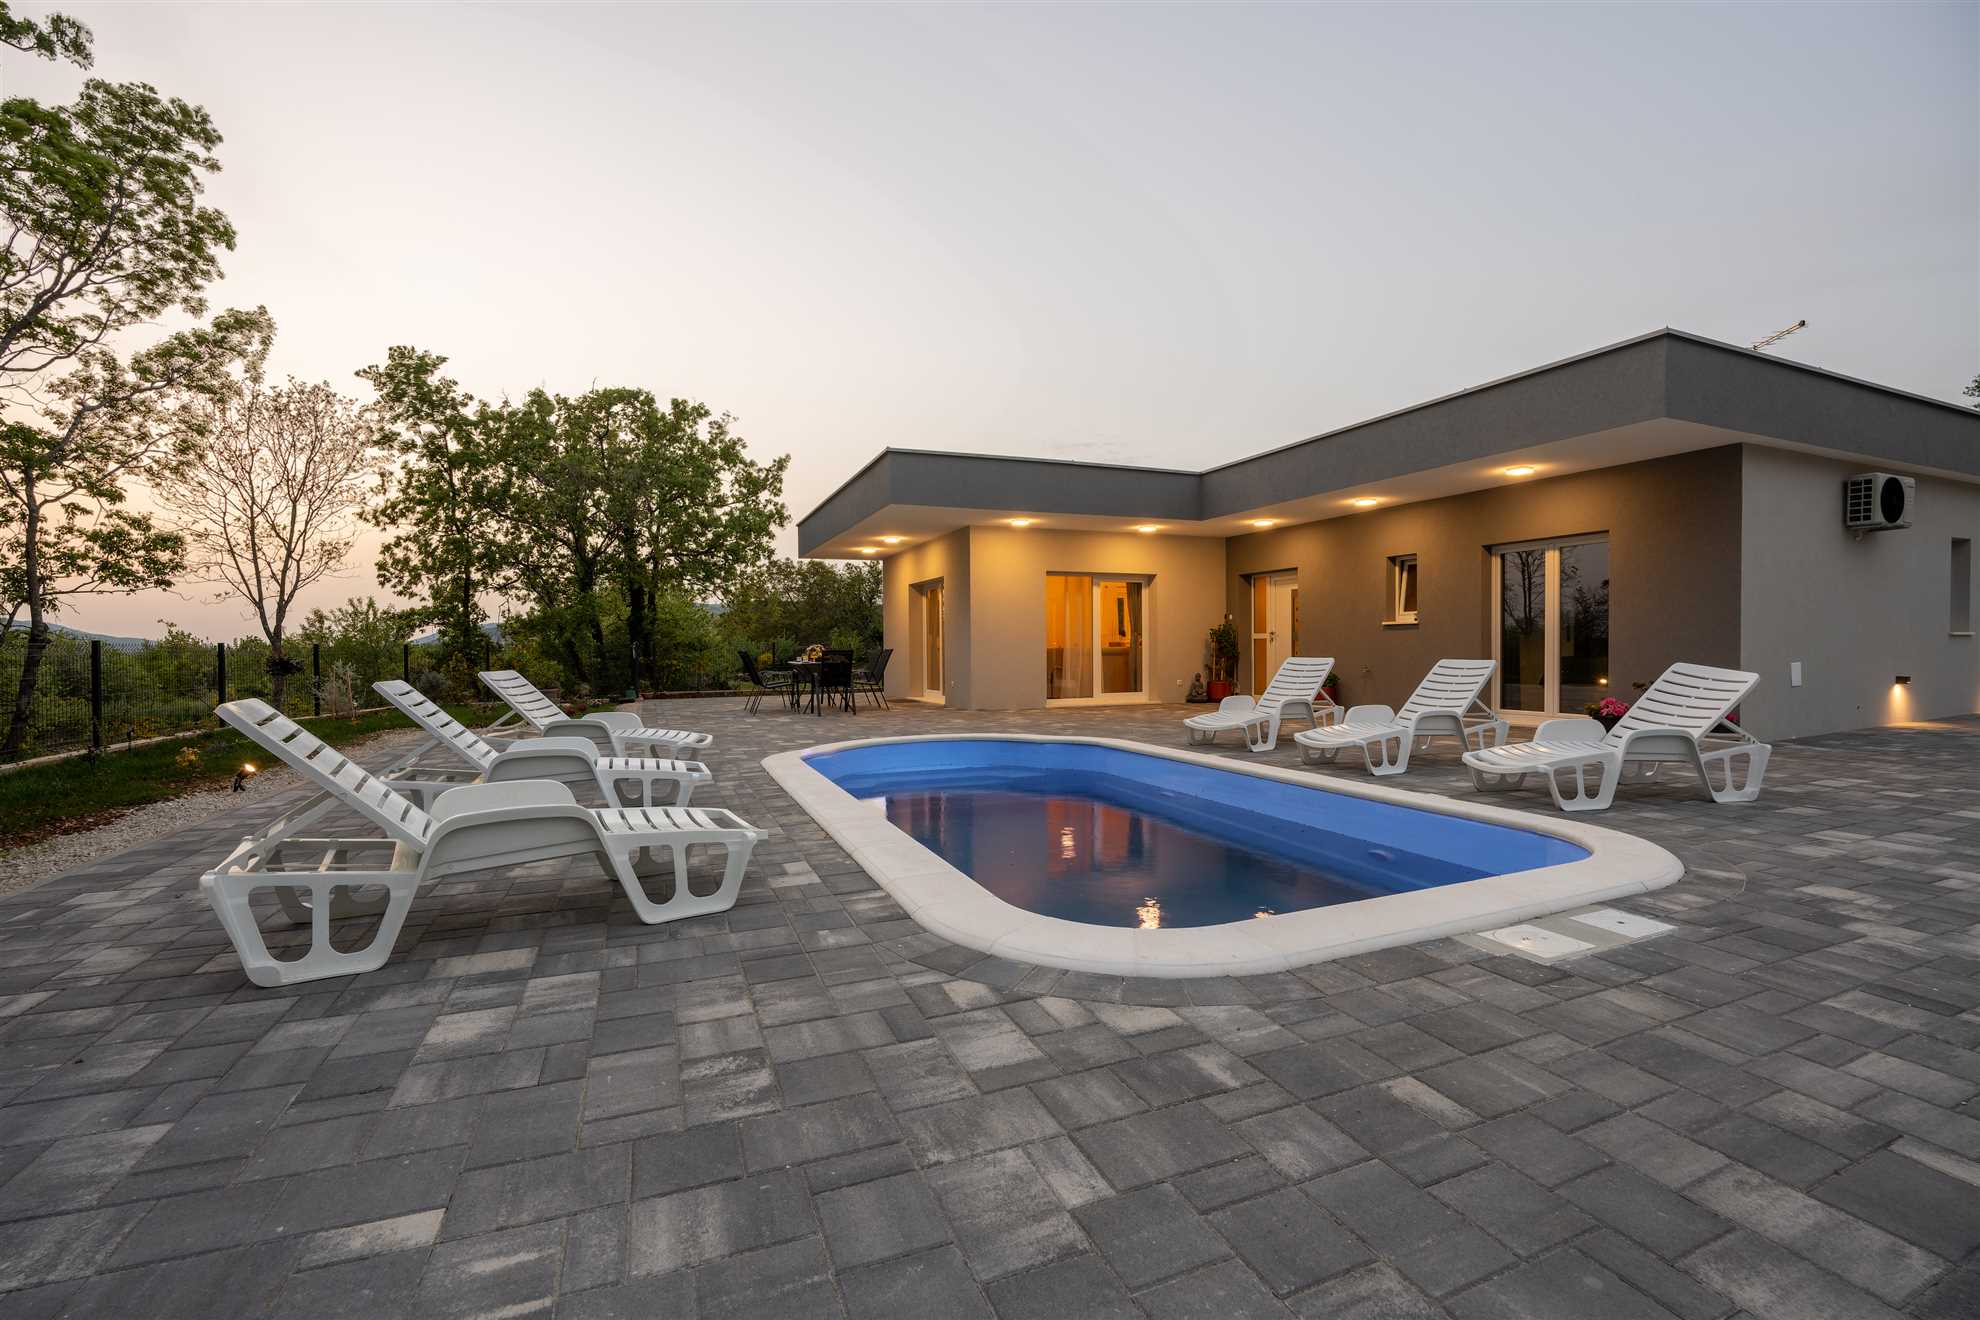 Image of New Villa Nadalina with swimming pool